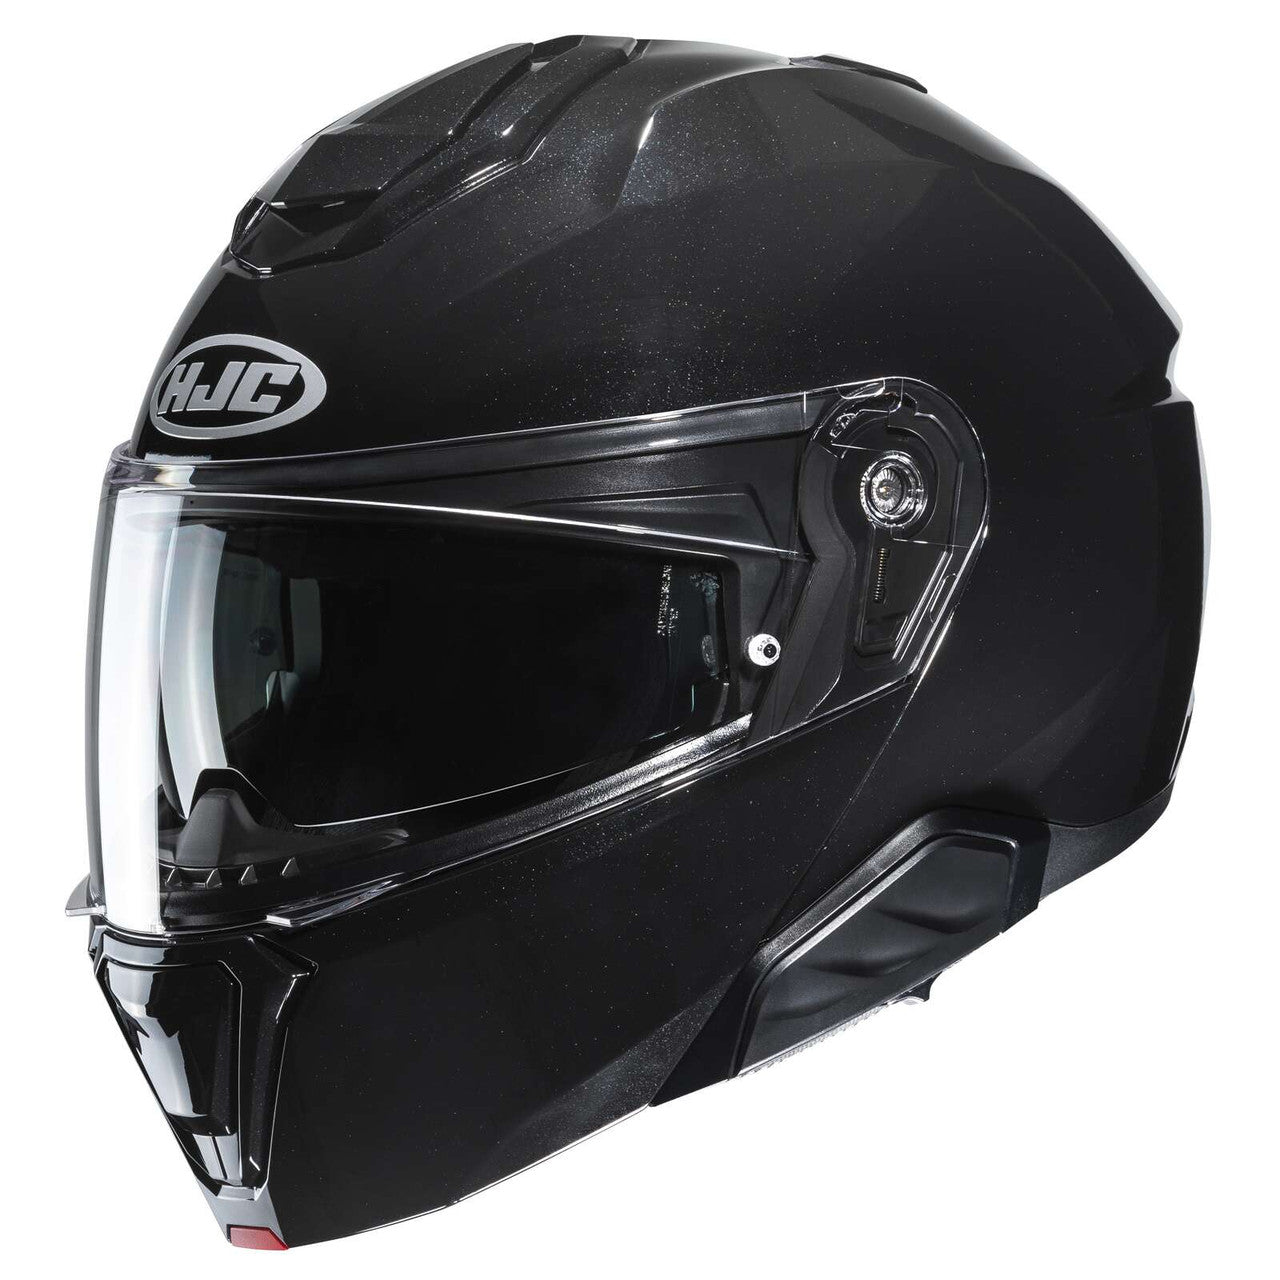 HJC-i91-Solid-Modular-Motorcycle-Helmet-Black-Main